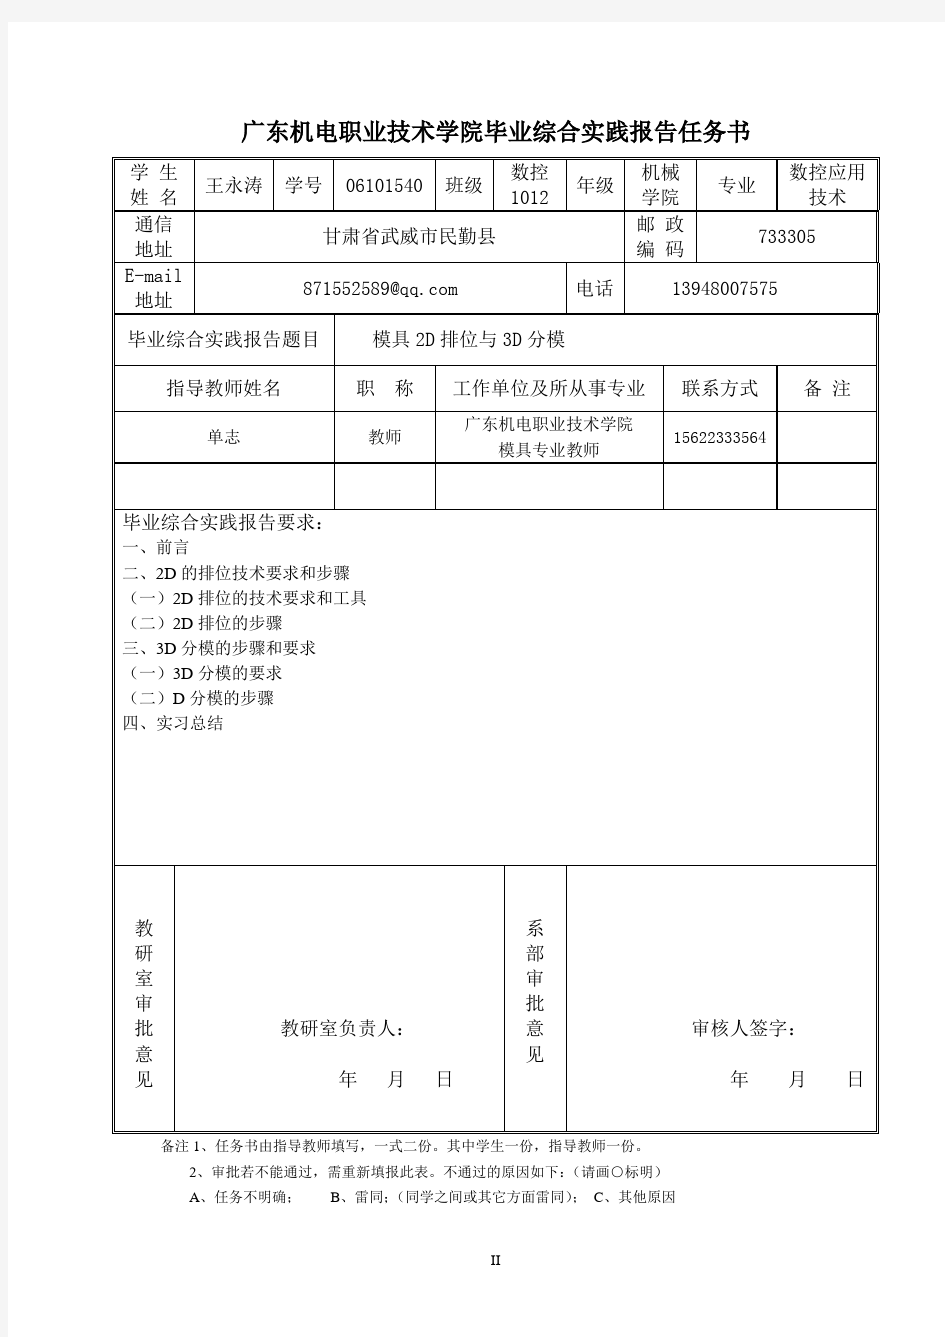 毕业综合实践报告及成绩评定表-刘焯莹